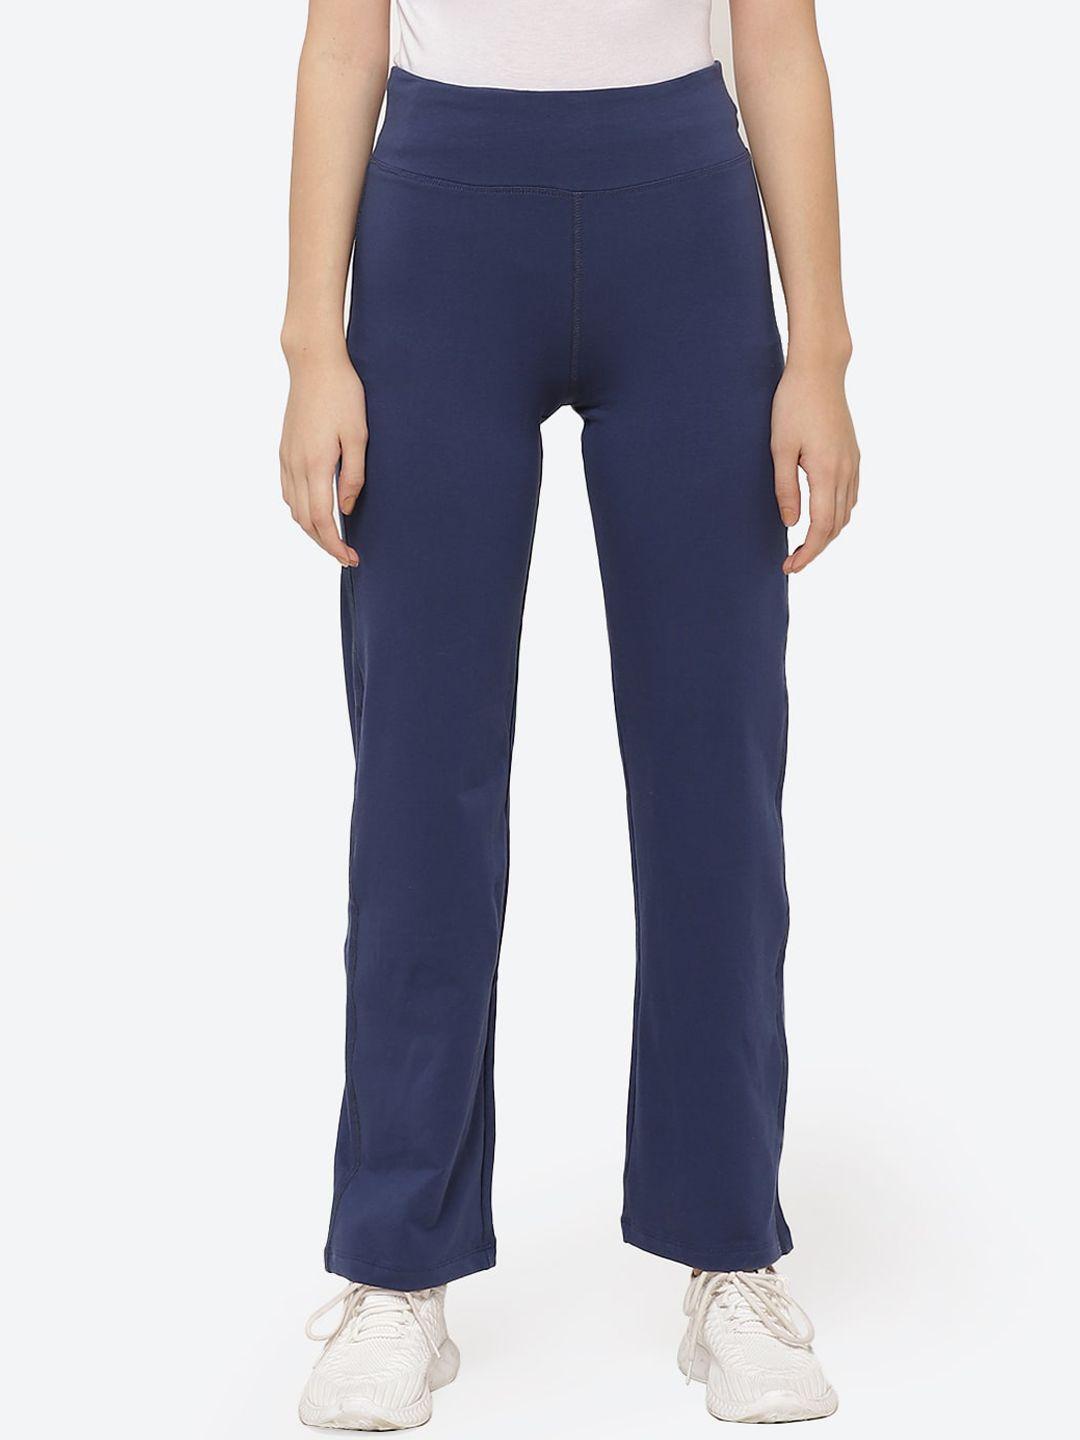 biba women navy blue regular fit solid regular trousers